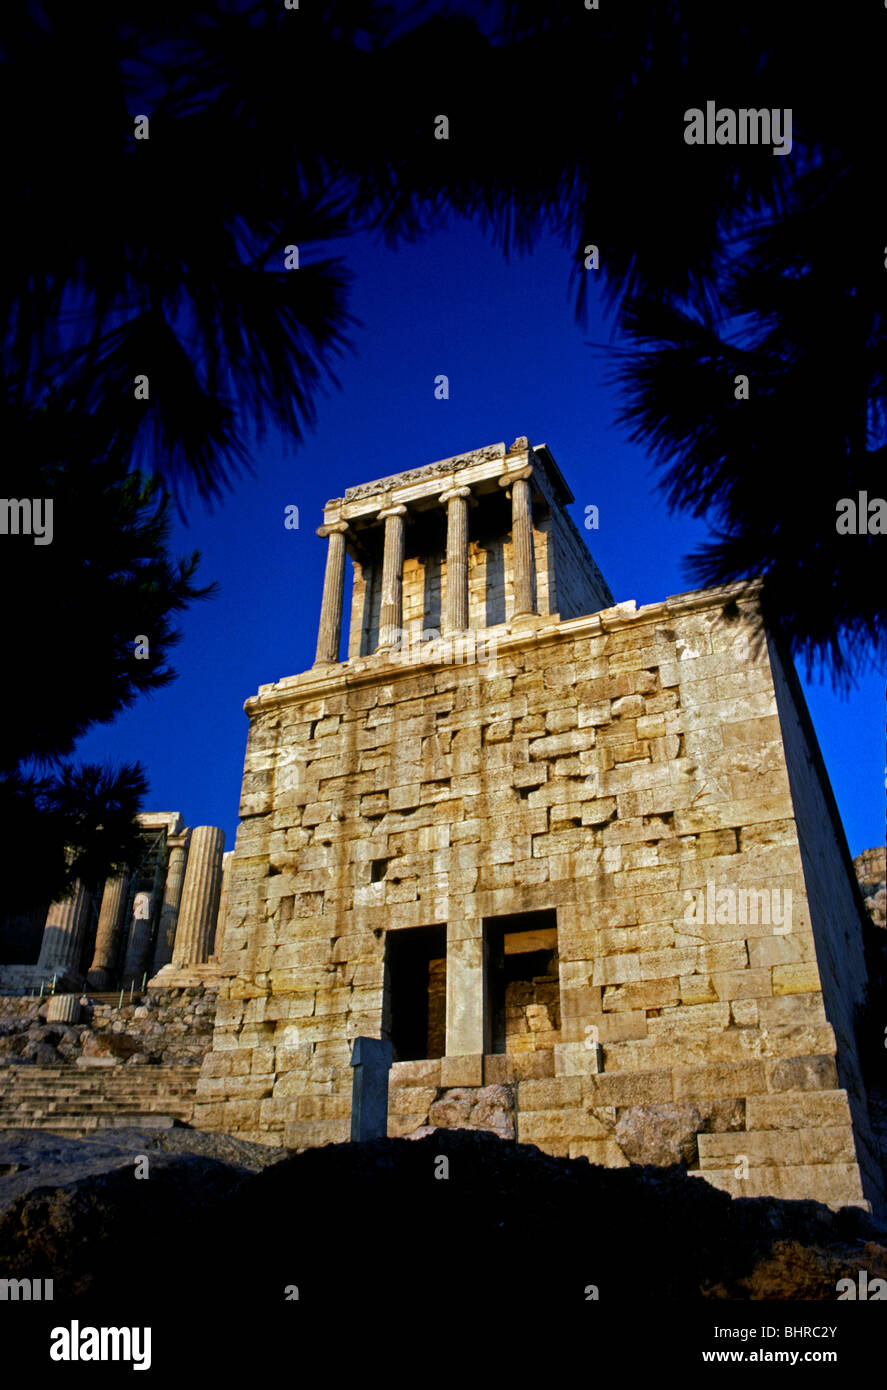 Temple of Athena Nike, Athena Nike, goddess of war, goddess of wisdom, Acropolis, city of Athens, Athens, Attica, Greece Stock Photo